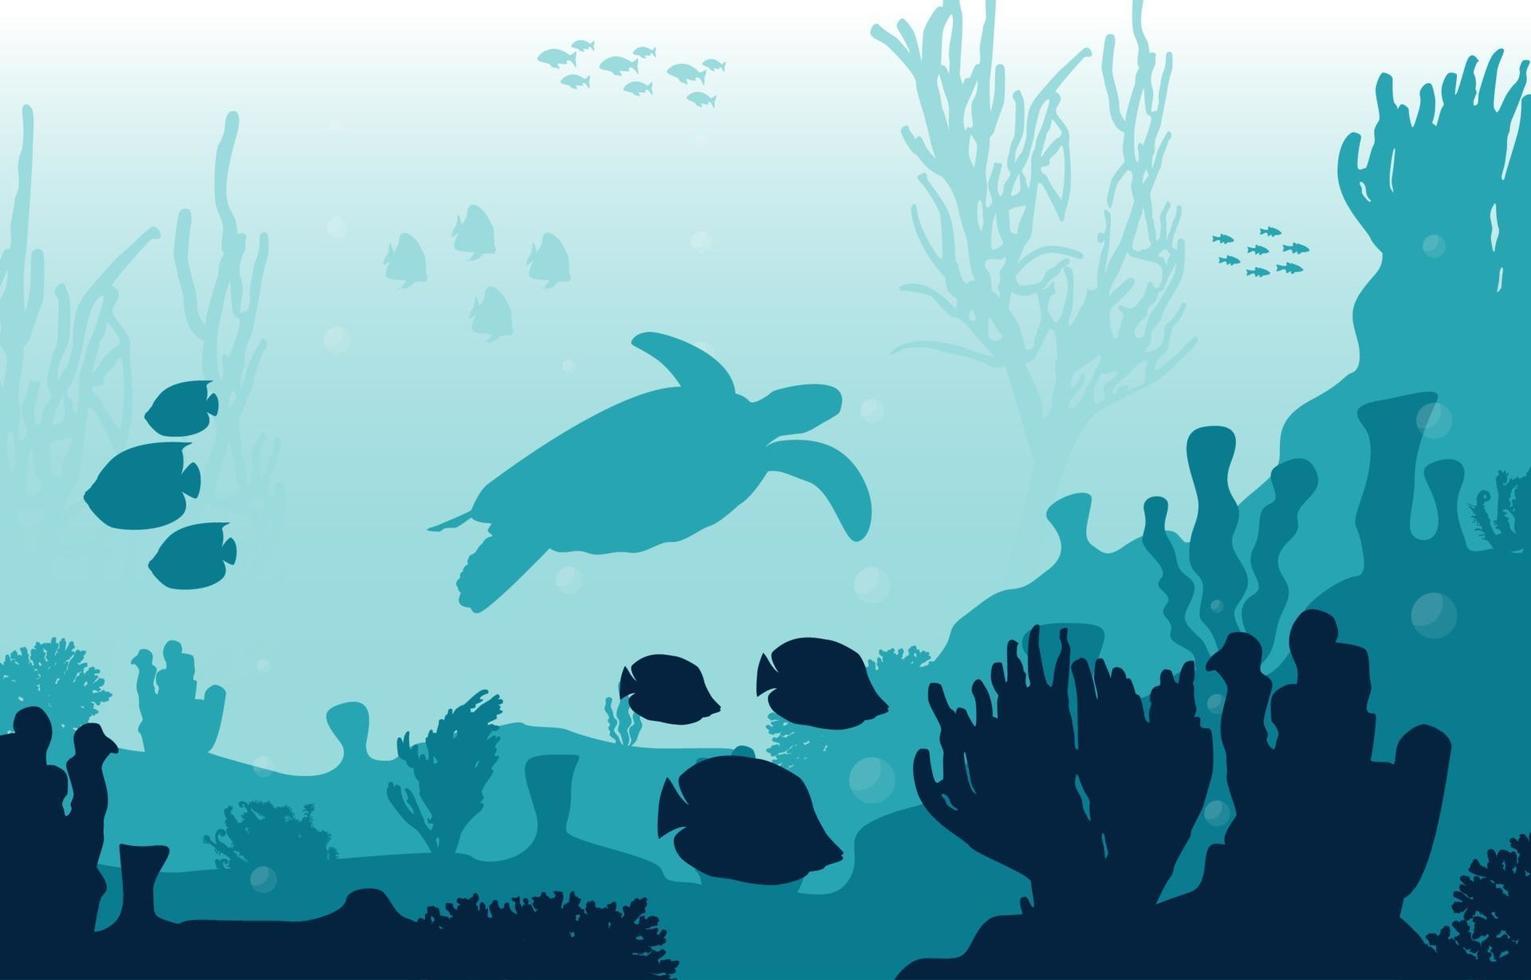 undervattensscen med sköldpaddor, fisk och korallrevillustration vektor